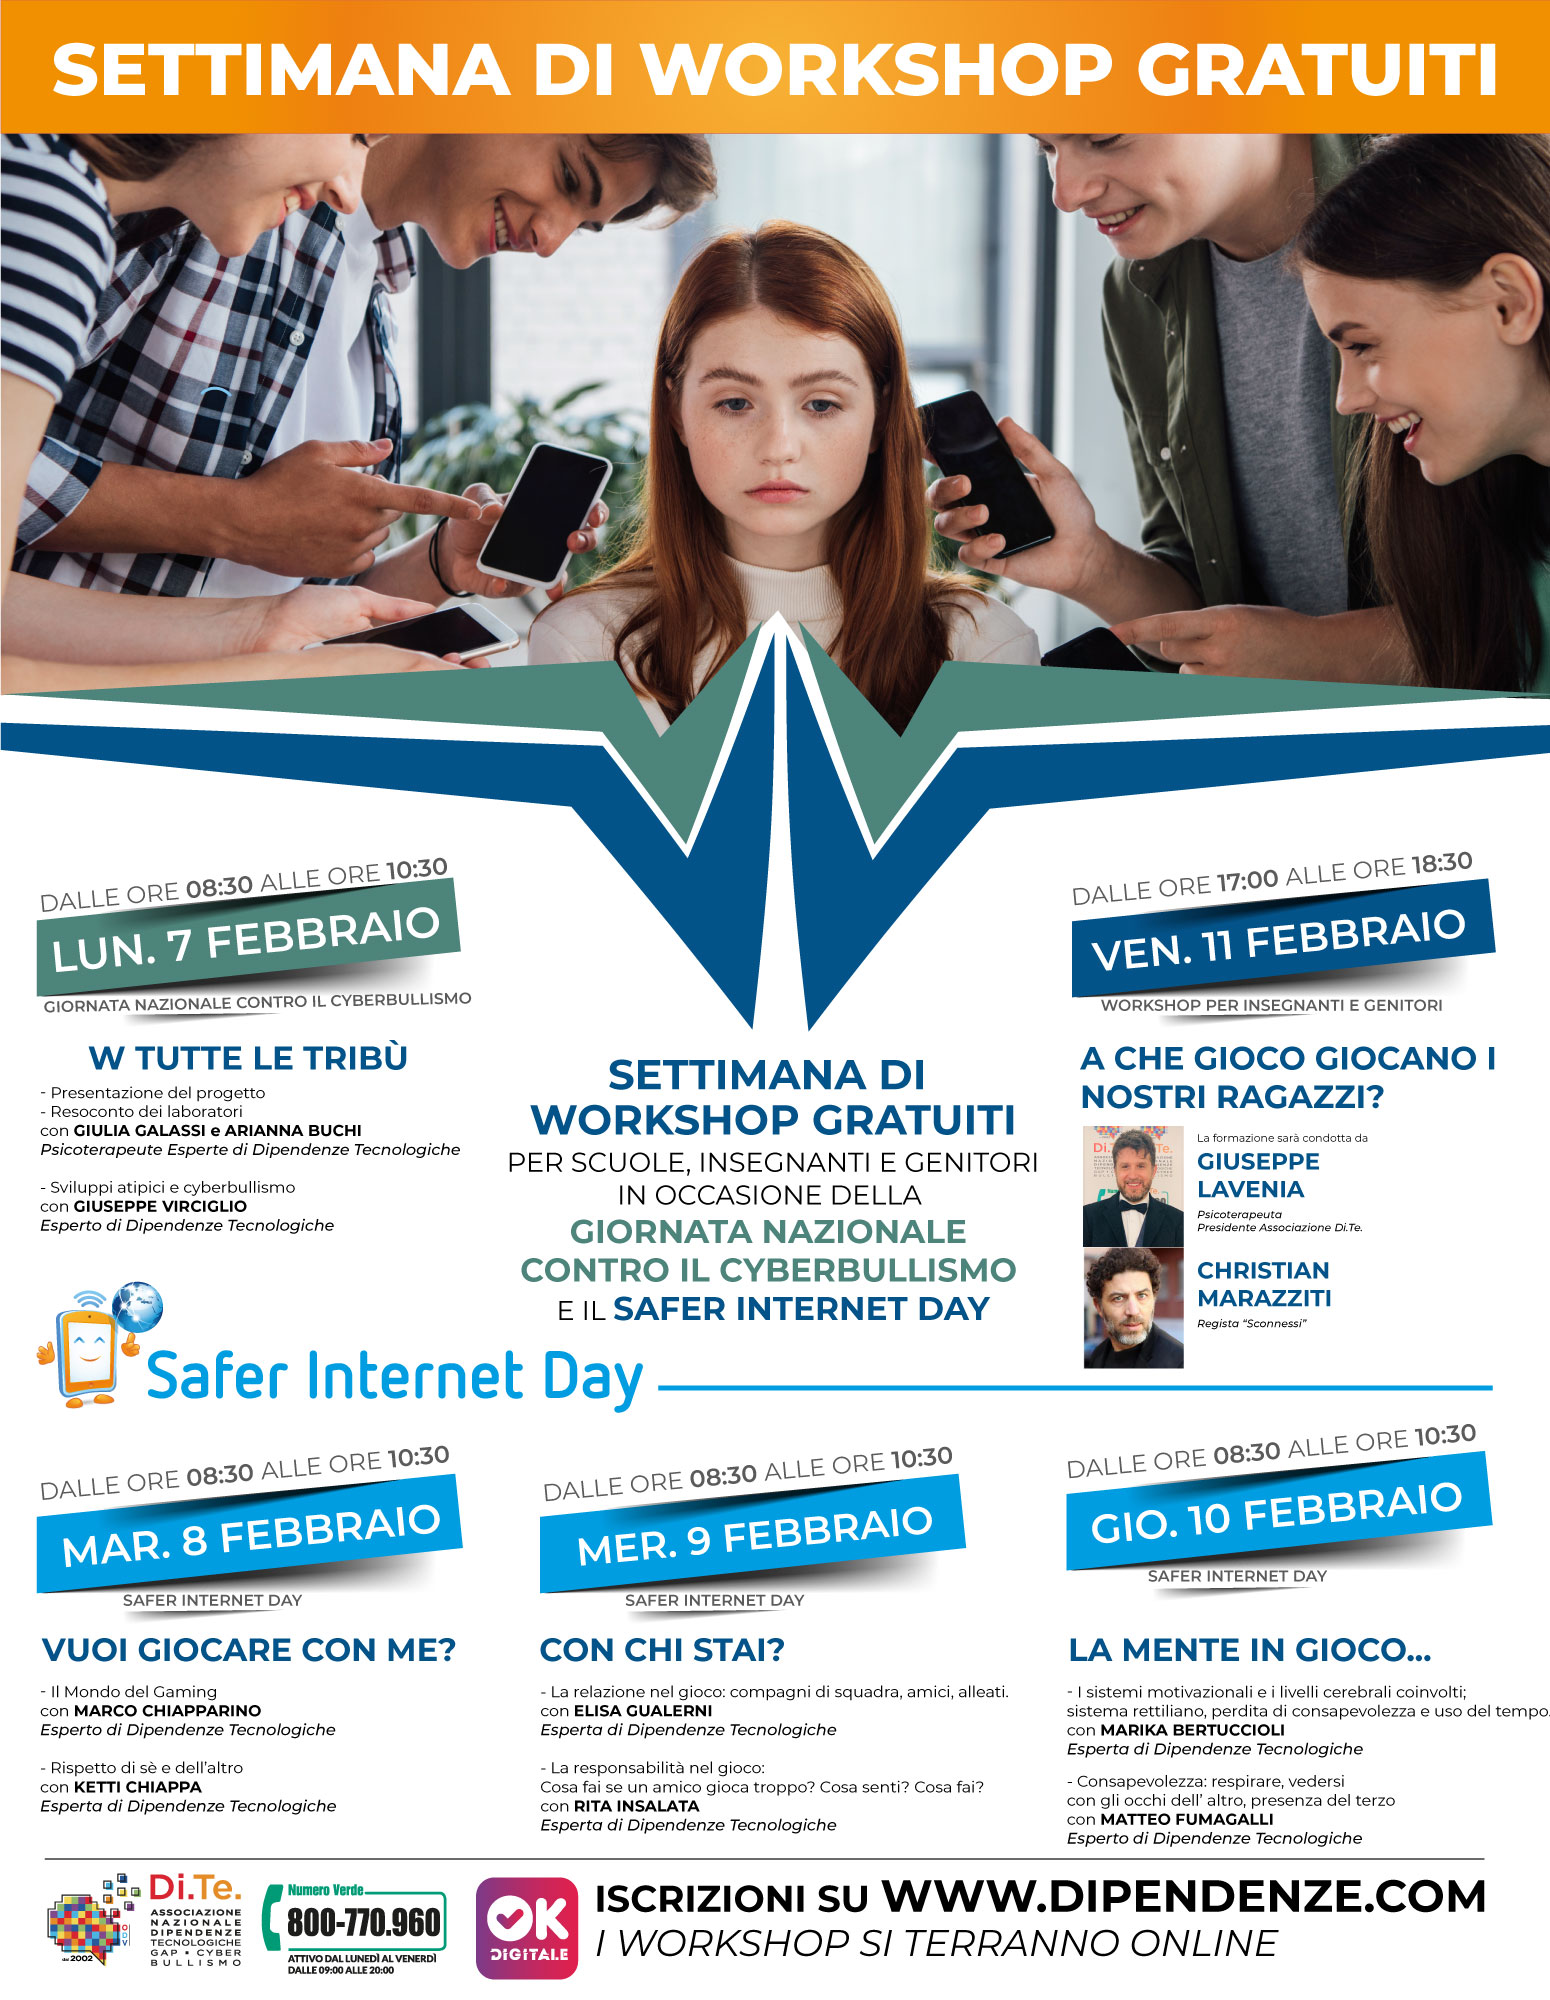 safer-internet-day-2022-6